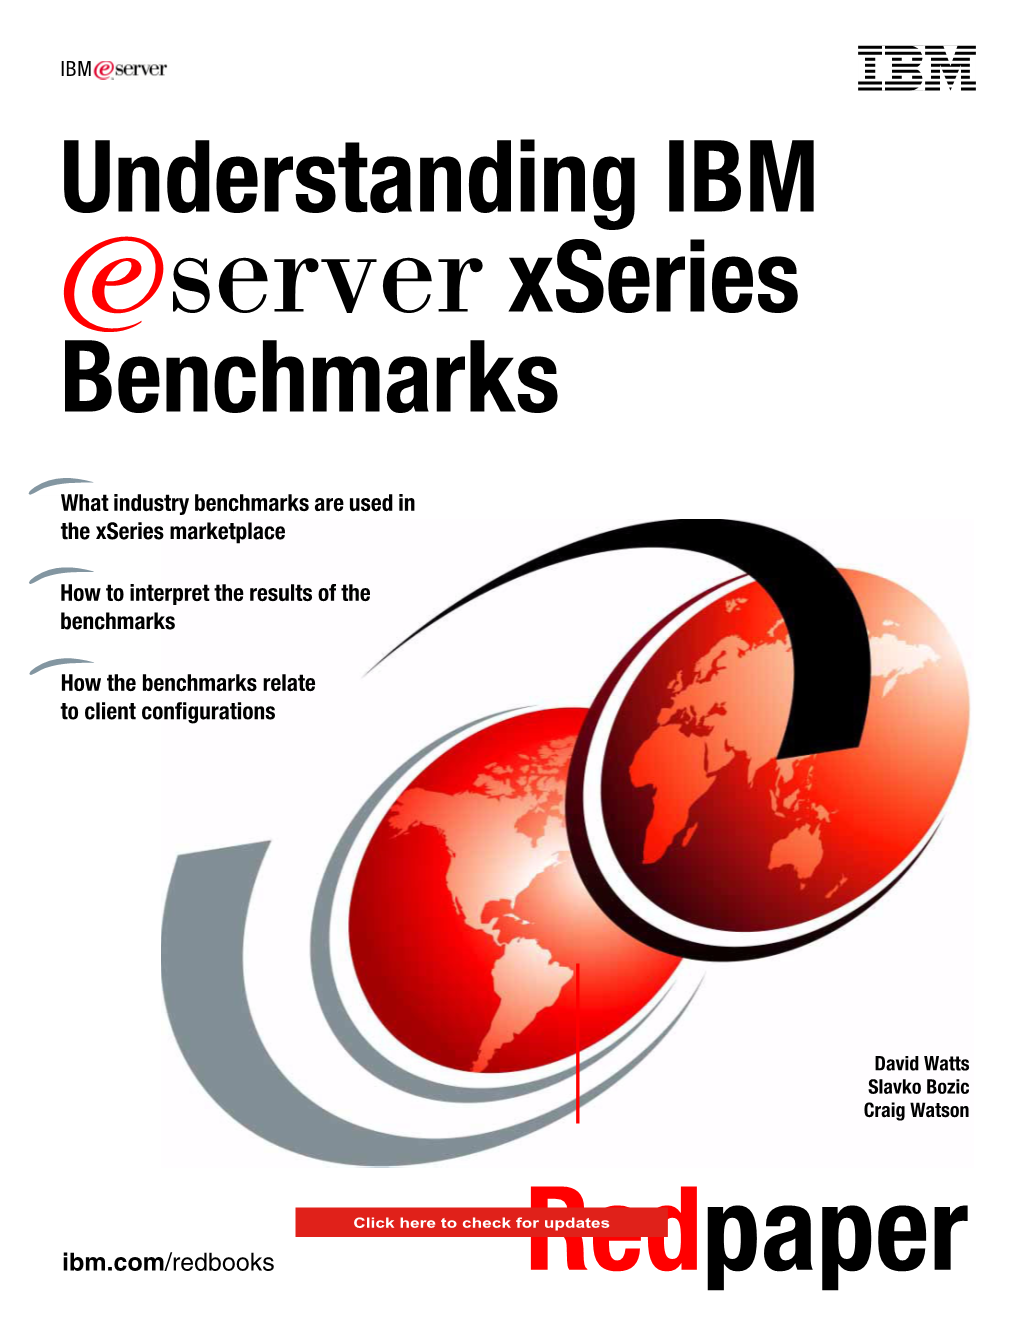 Understanding IBM Eserver Xseries Benchmarks